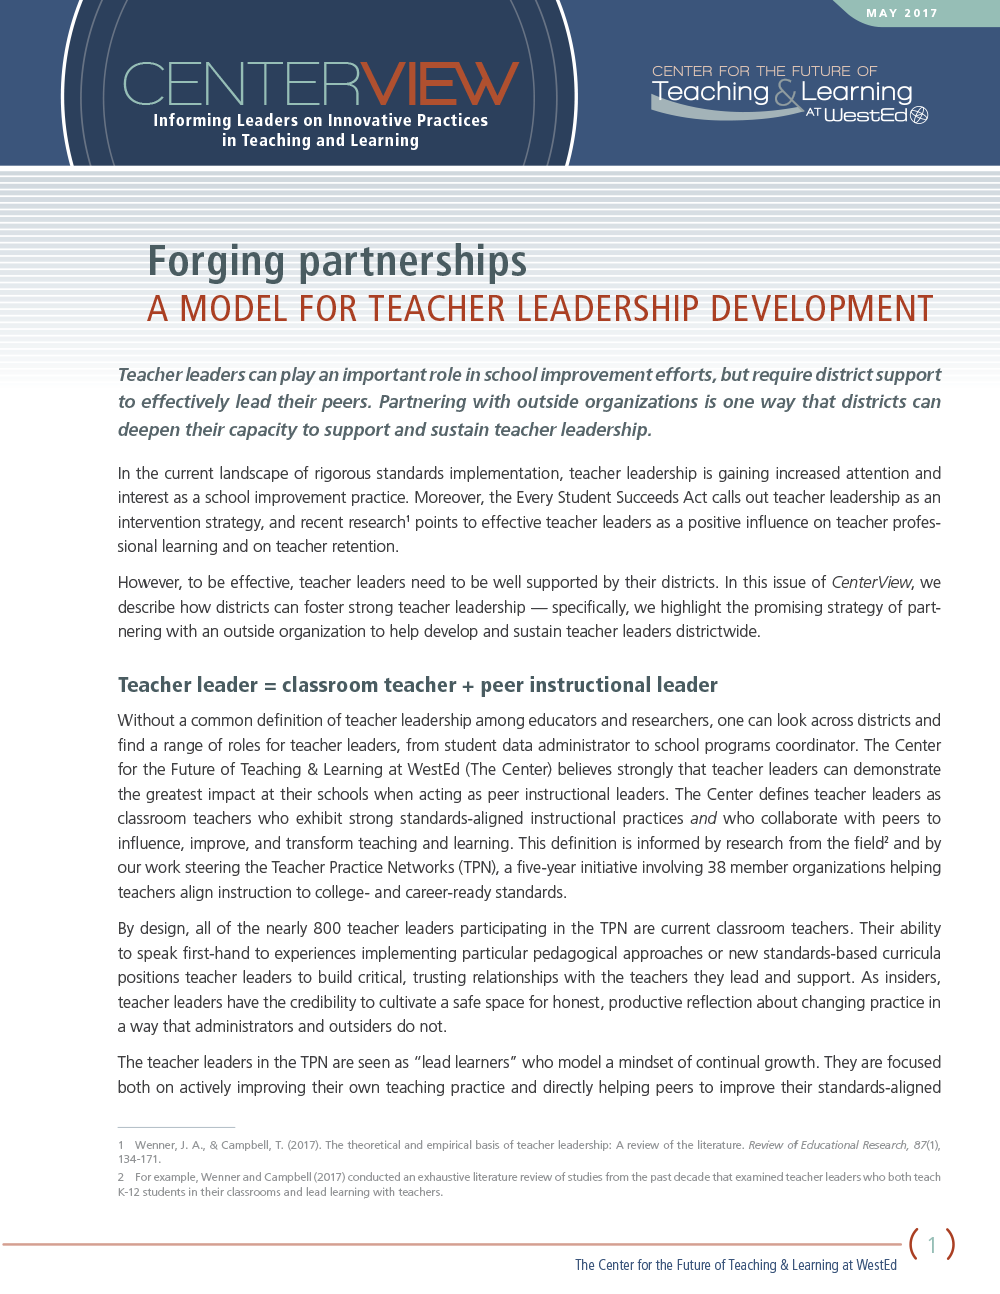 CenterView: Forging Partnerships — A Model for Teacher Leadership Development